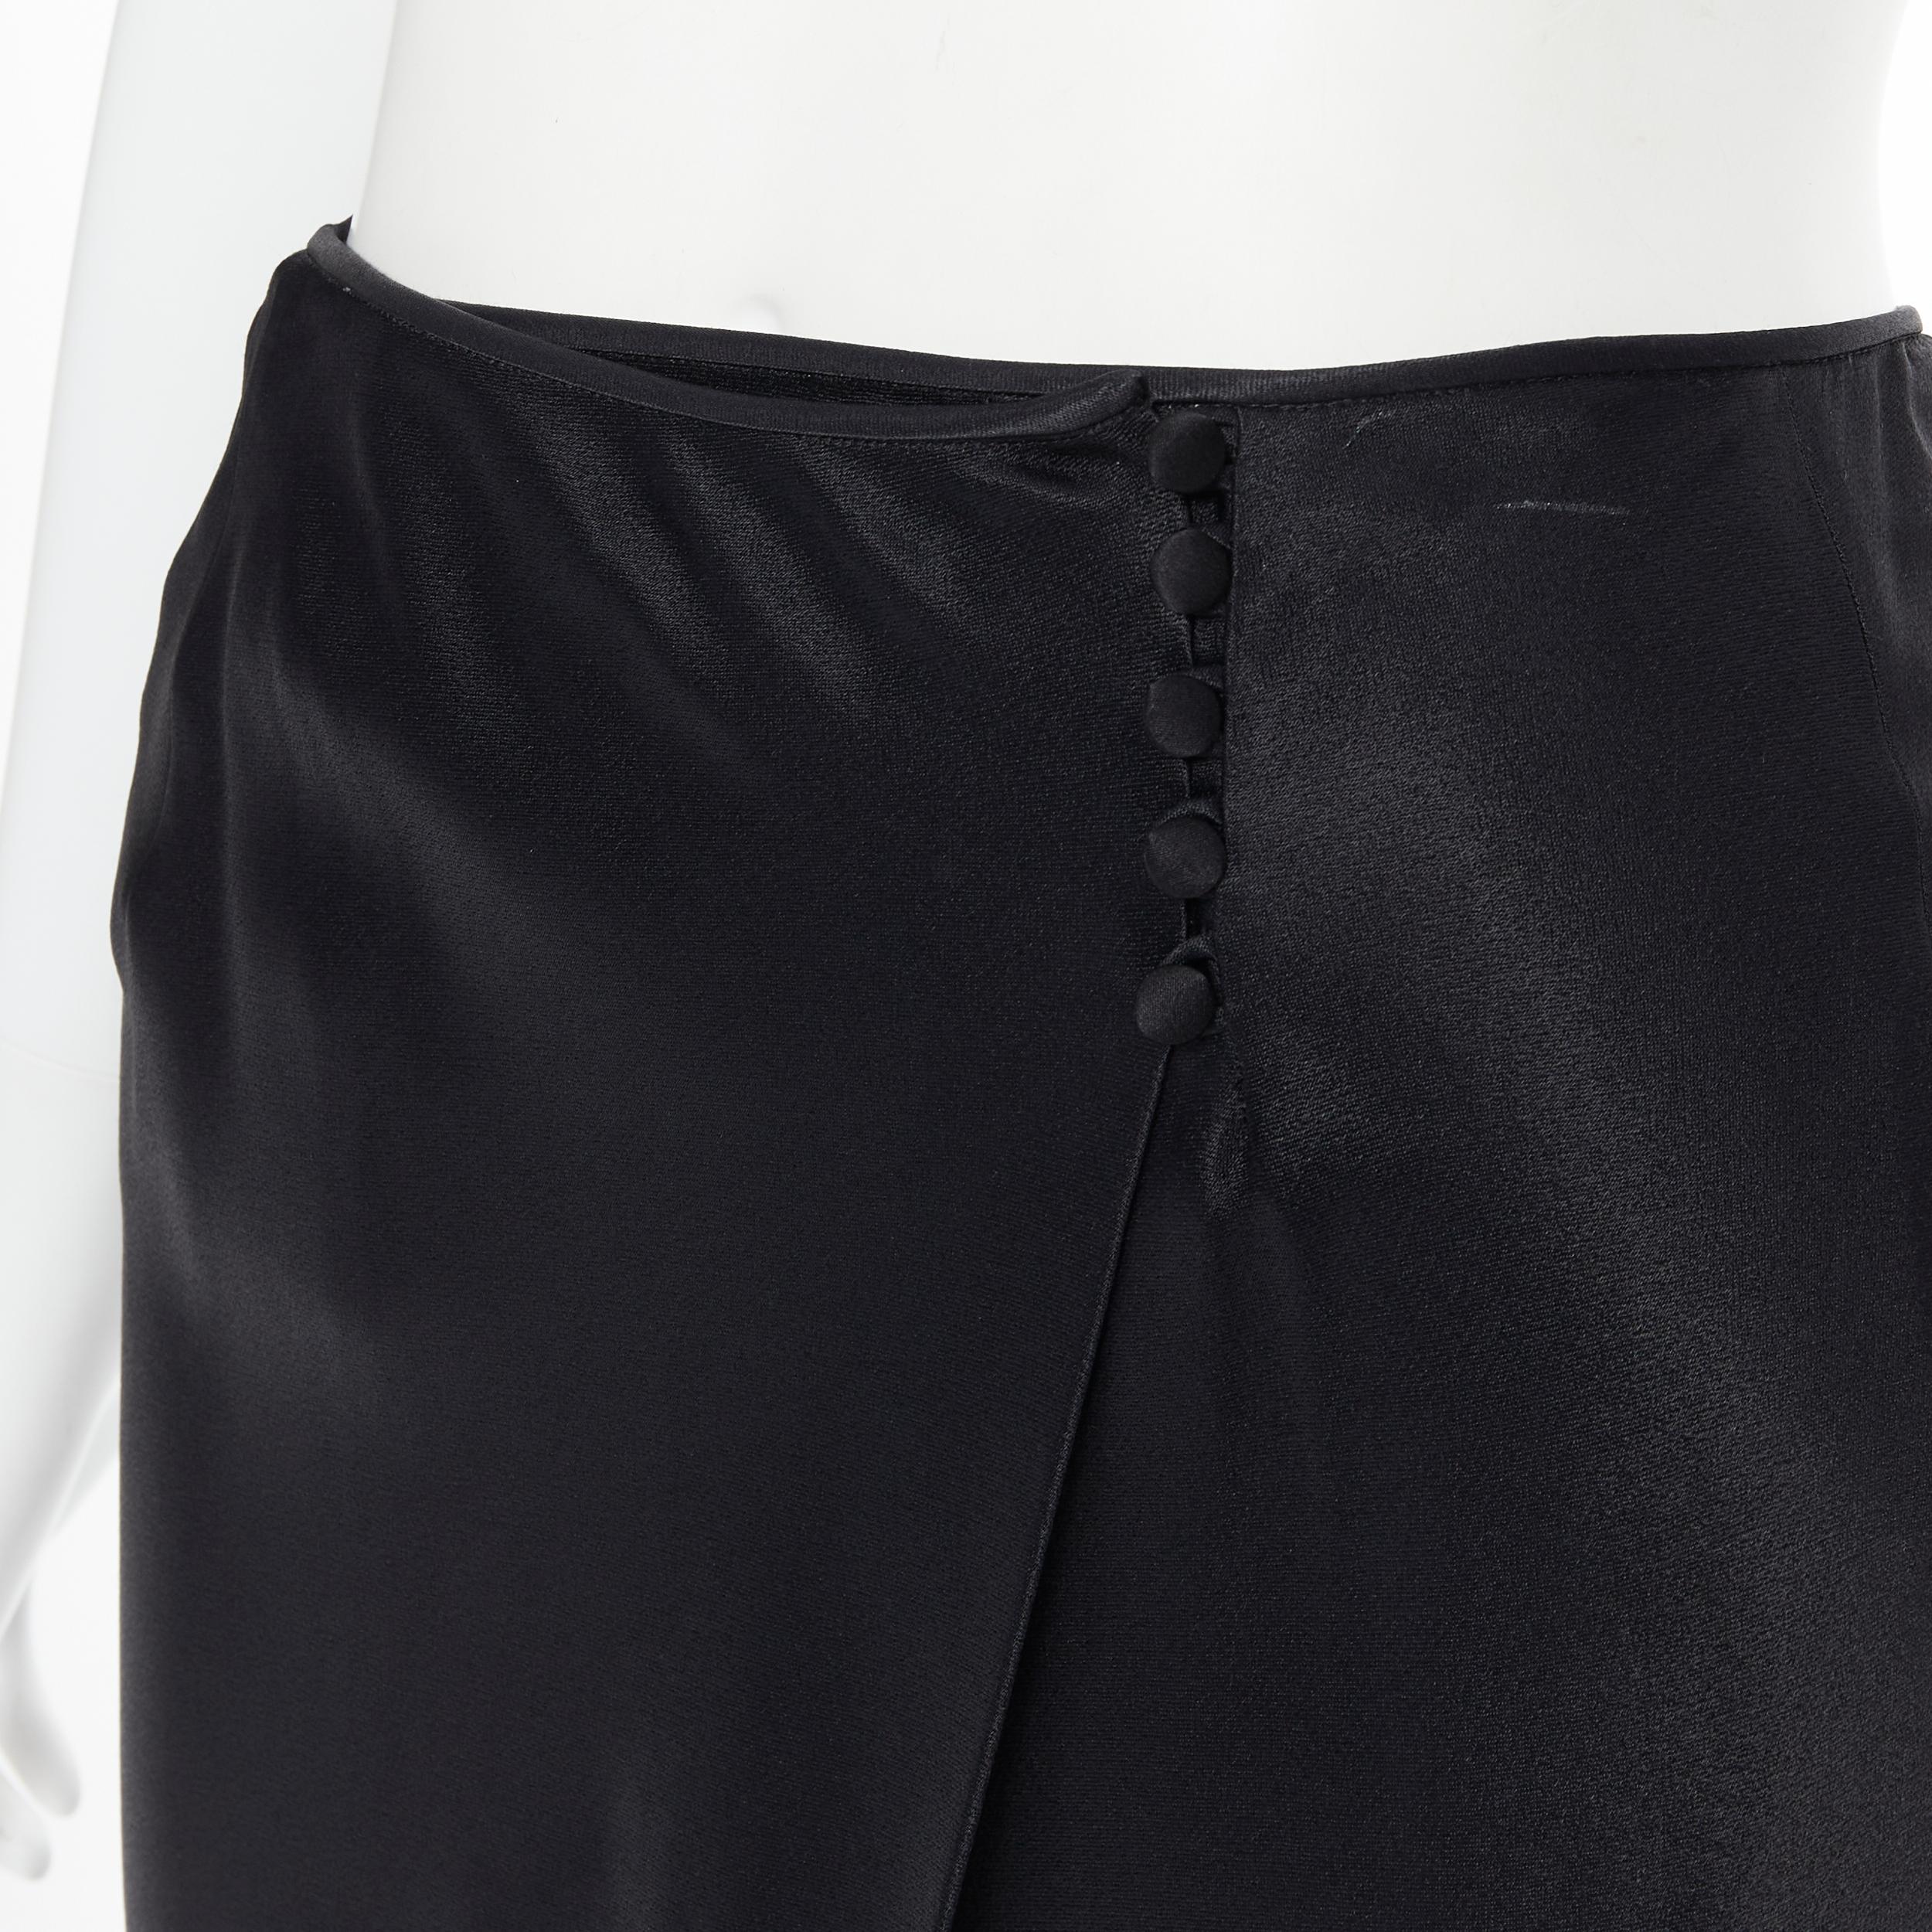 Women's JOHN GALLIANO black silk satin button asymmetric wrap slit skirt pants XS